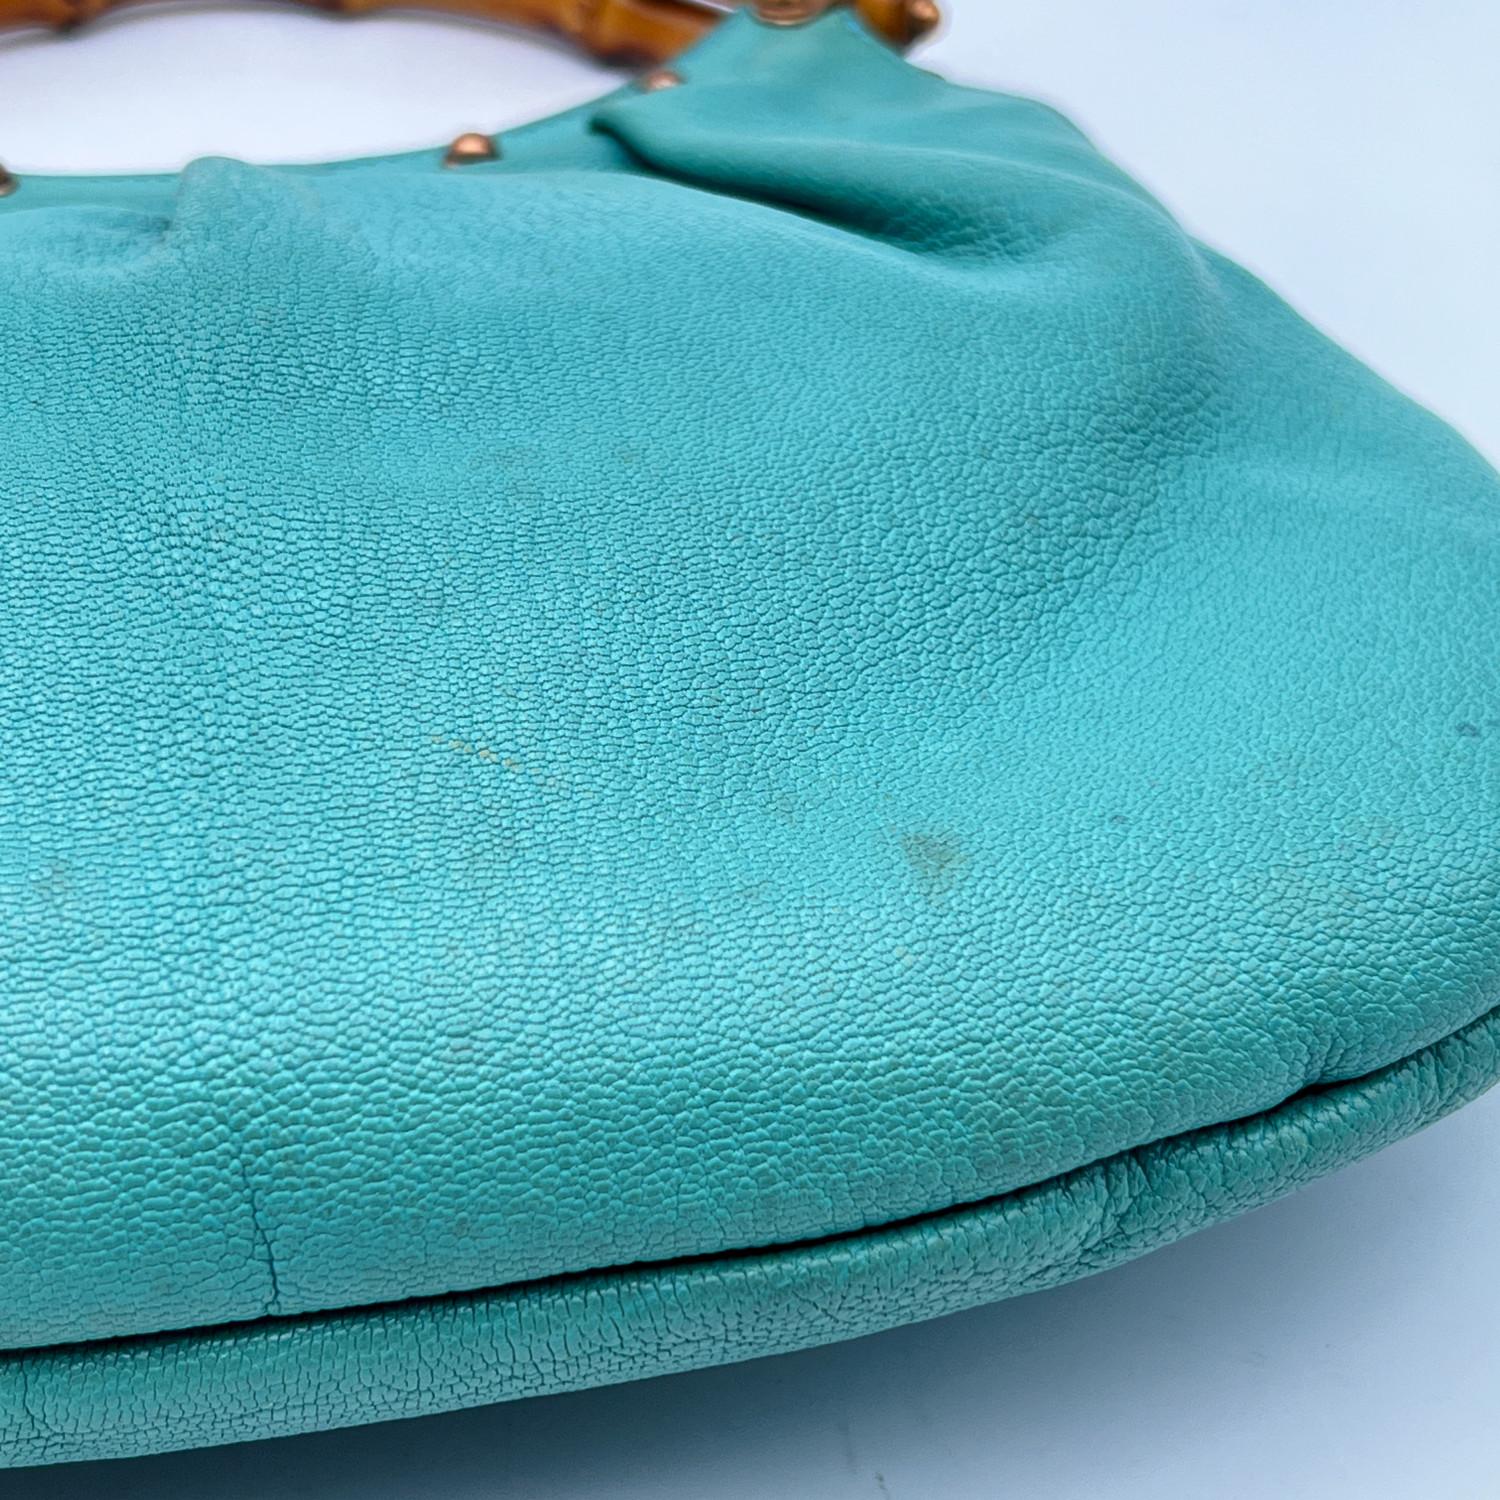 Gucci Turquoise Leather Bamboo Studded Handbag Hobo Bag For Sale 3